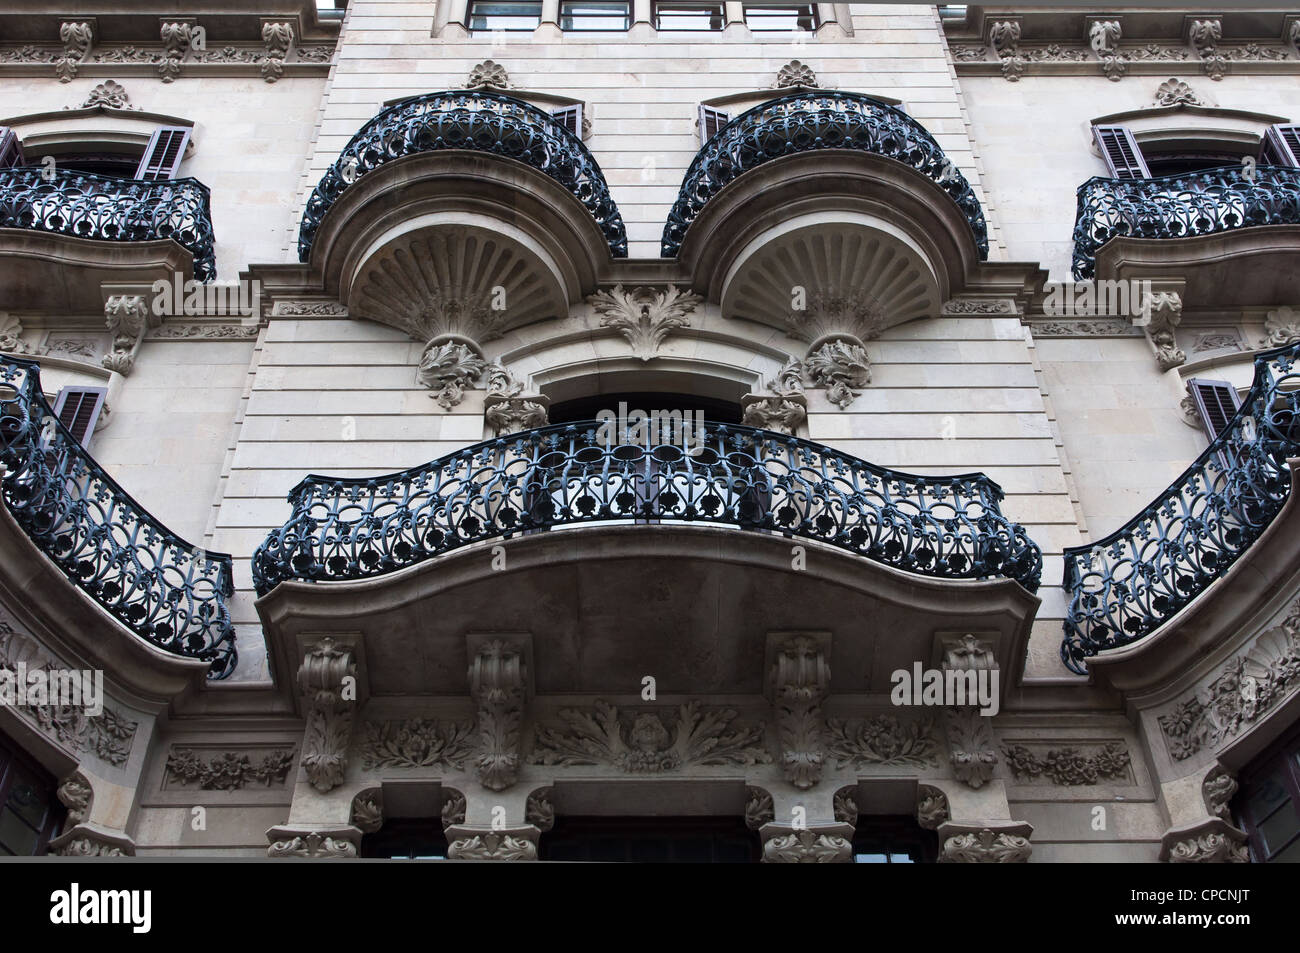 Modernist building facade in Passeig de Gracia, Barcelona, Spain. Stock Photo